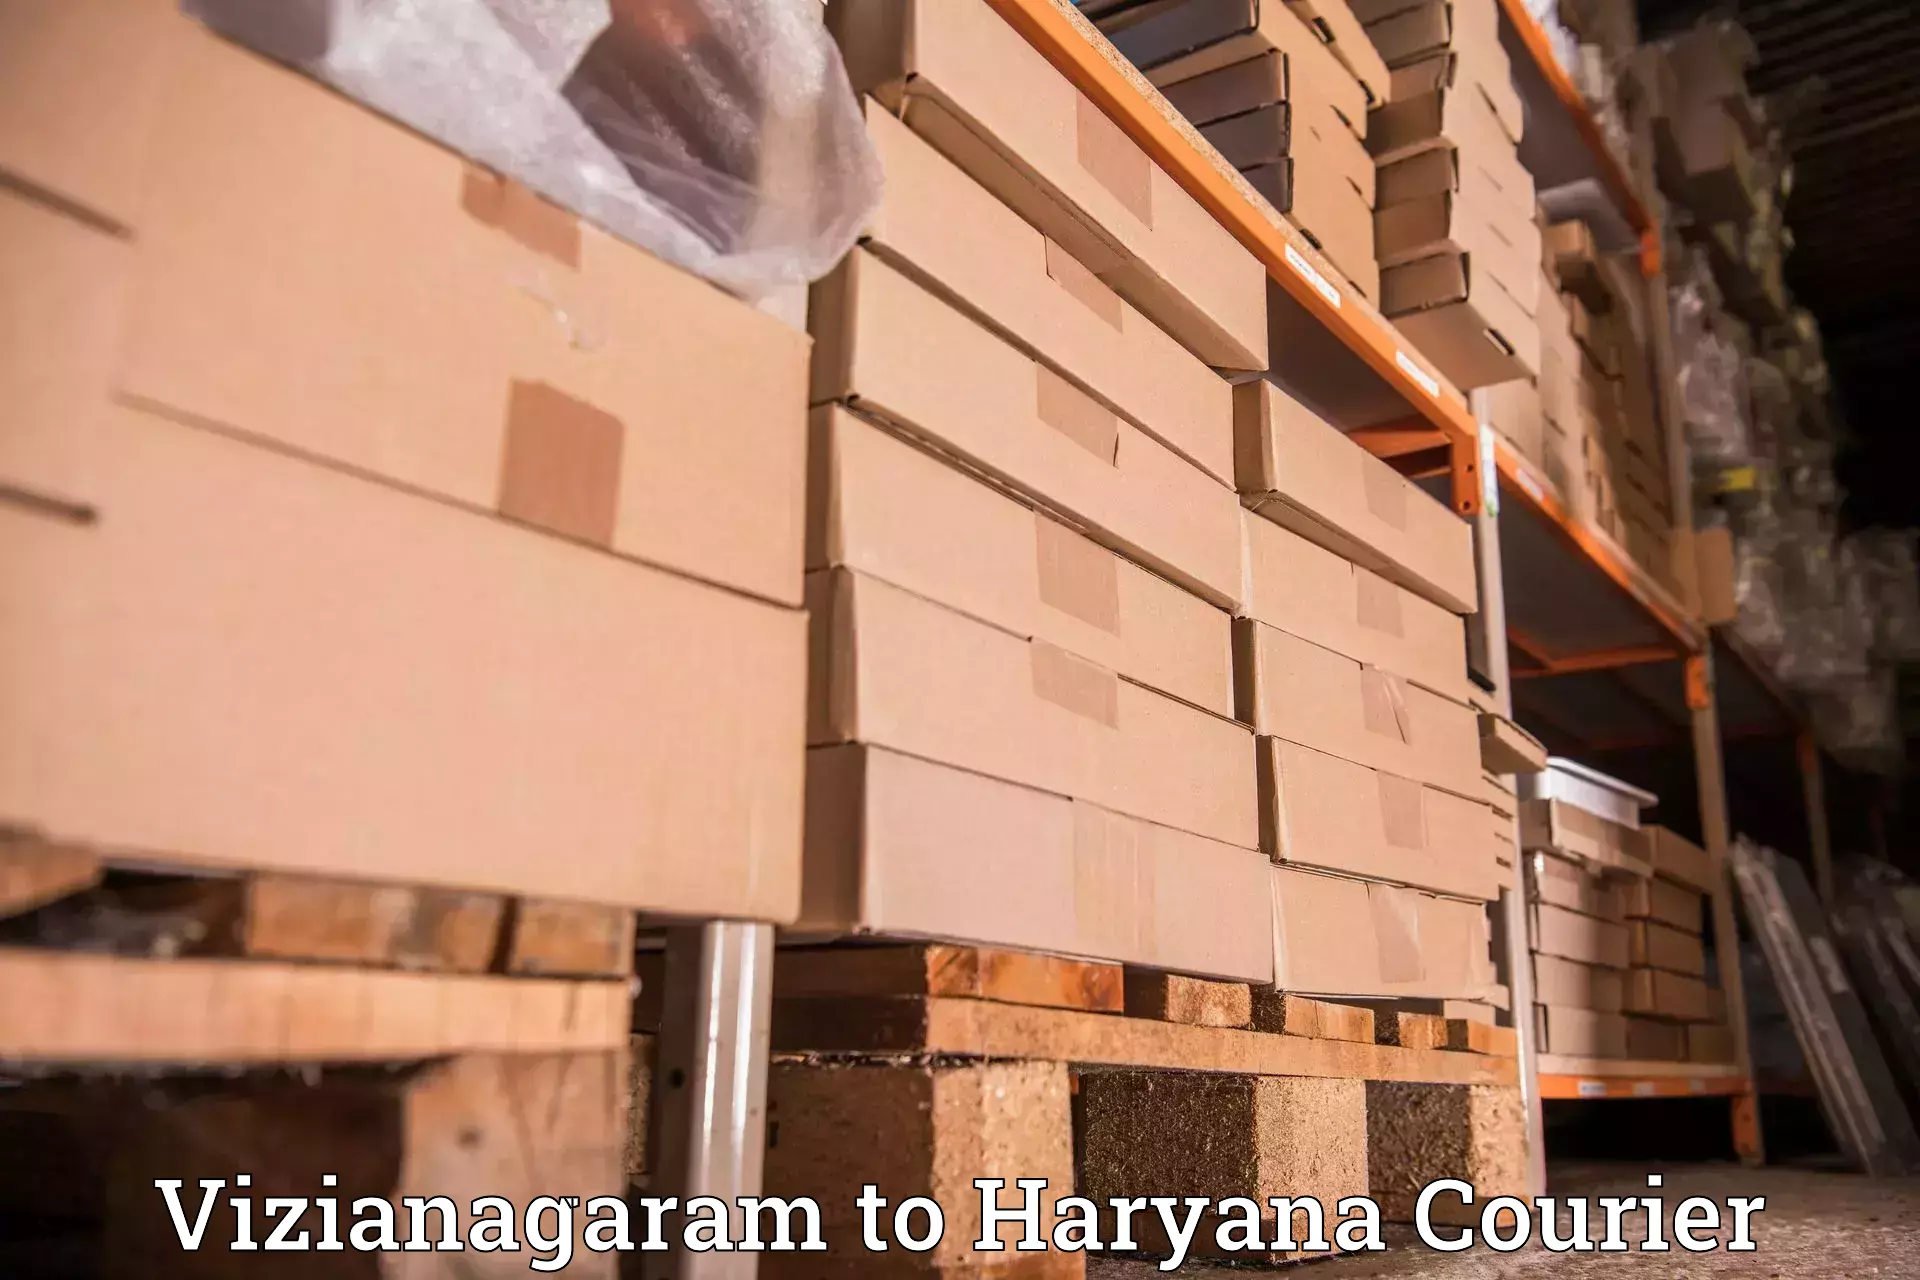 Heavyweight shipping Vizianagaram to Chaudhary Charan Singh Haryana Agricultural University Hisar